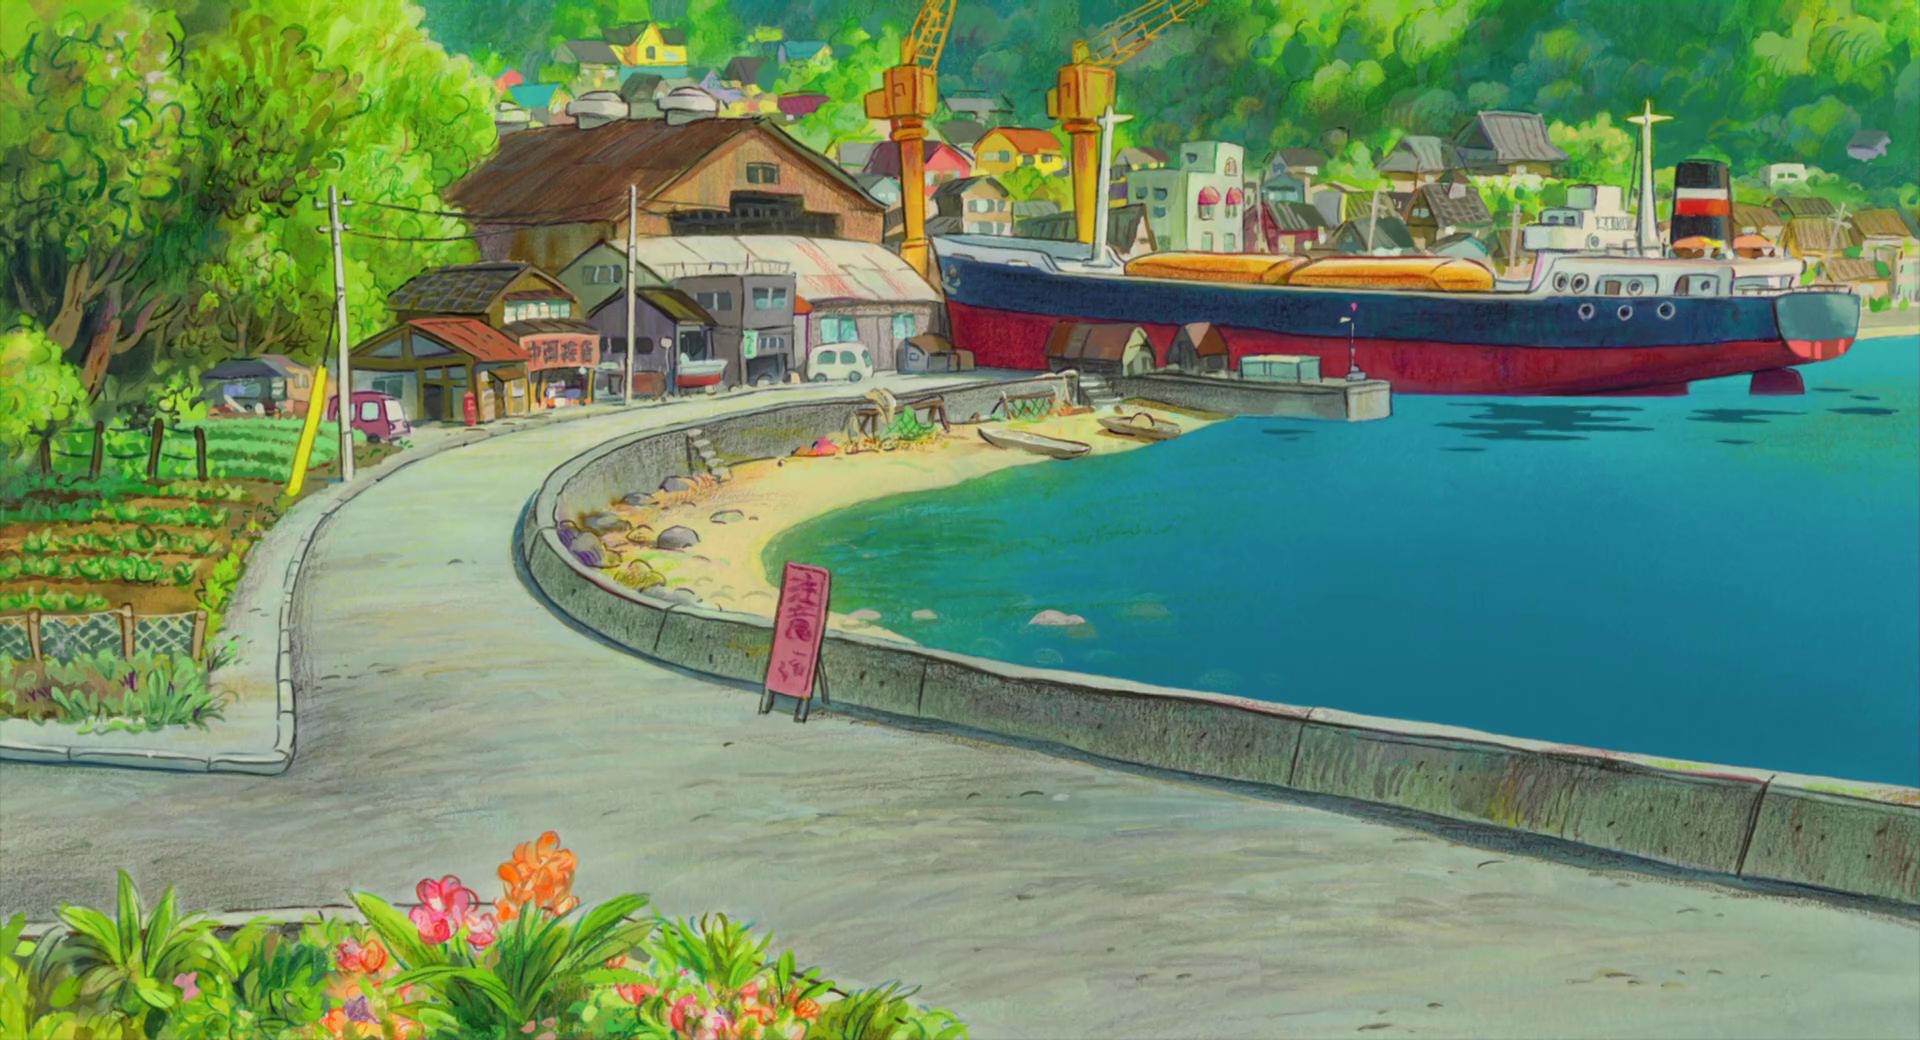 Studio Ghibli: Hãy đến với Studio Ghibli và khám phá vô vàn thế giới diệu kỳ trong các tác phẩm hoạt hình nổi tiếng của hãng. Hãy ngắm nhìn những hình ảnh tuyệt đẹp để cảm nhận được sức mạnh của trí tưởng tượng.